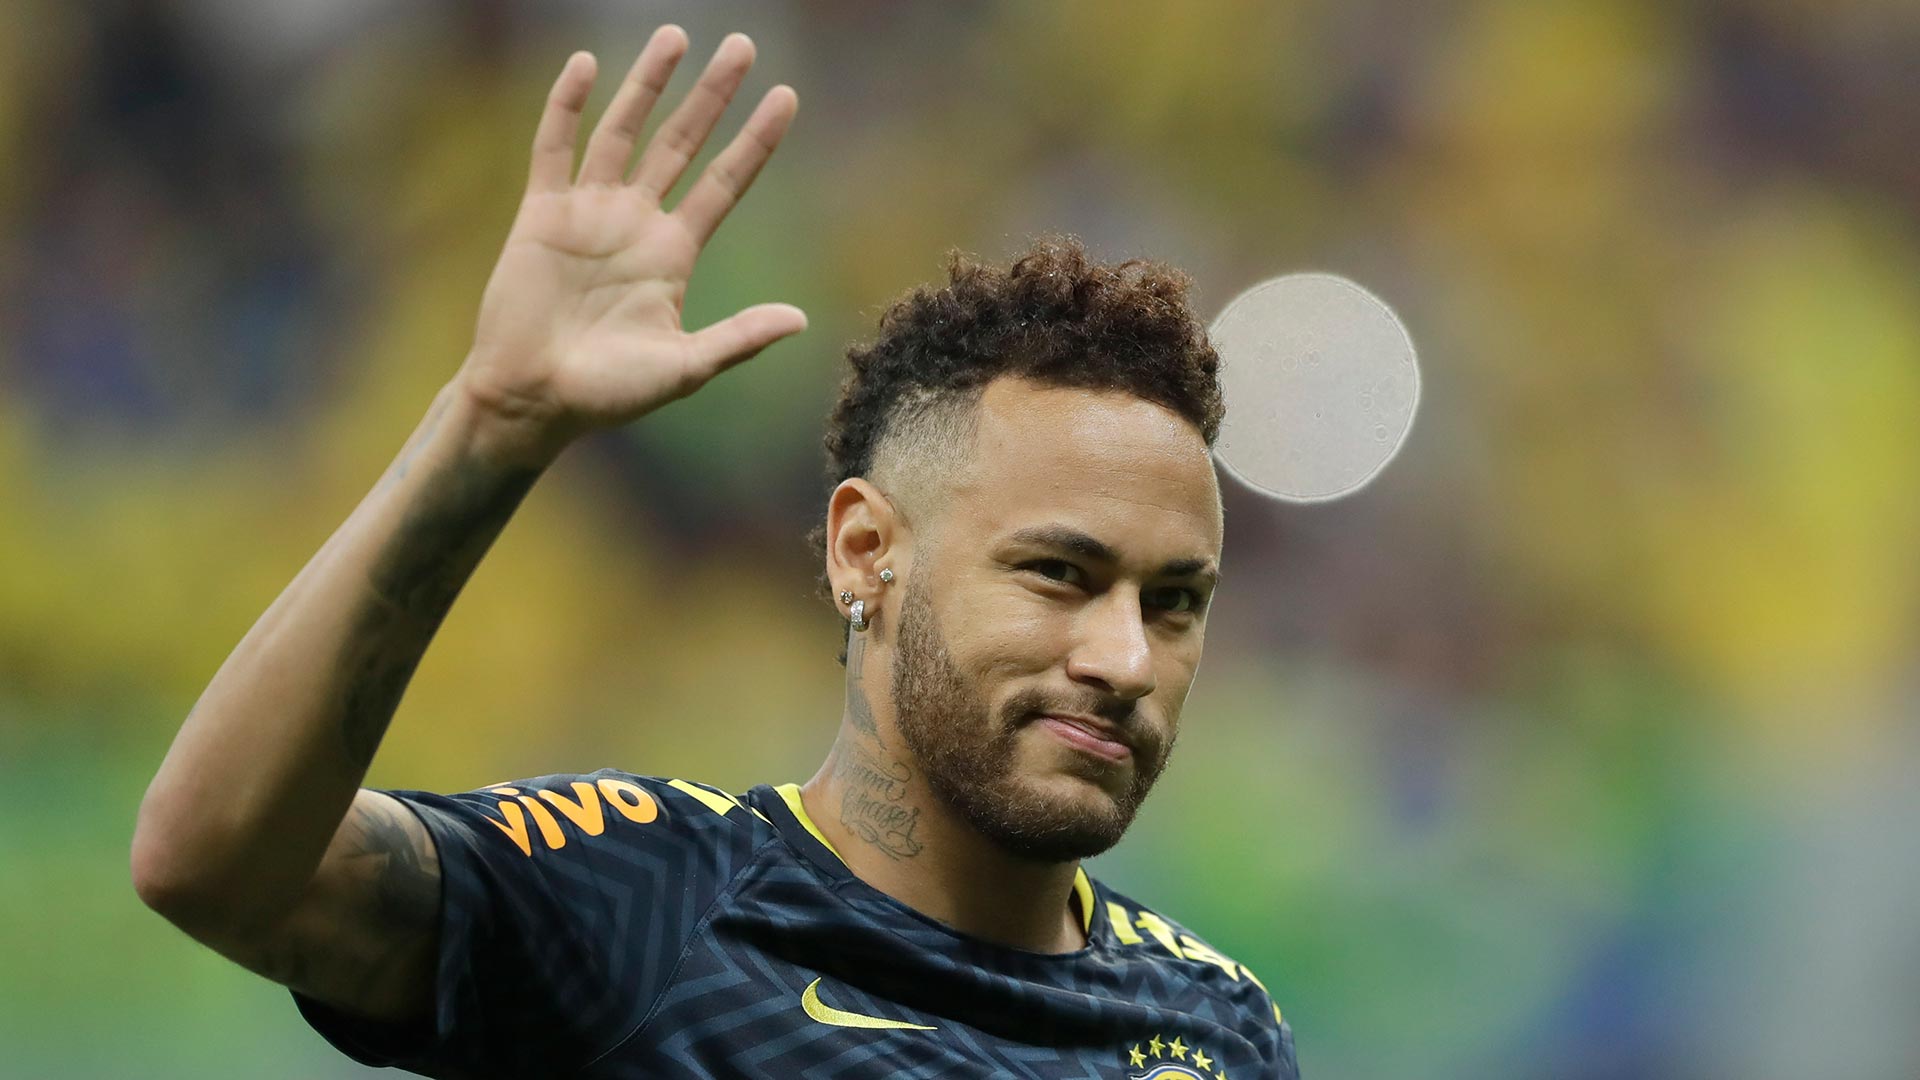 Archivada la investigación contra Neymar por una denuncia de violación